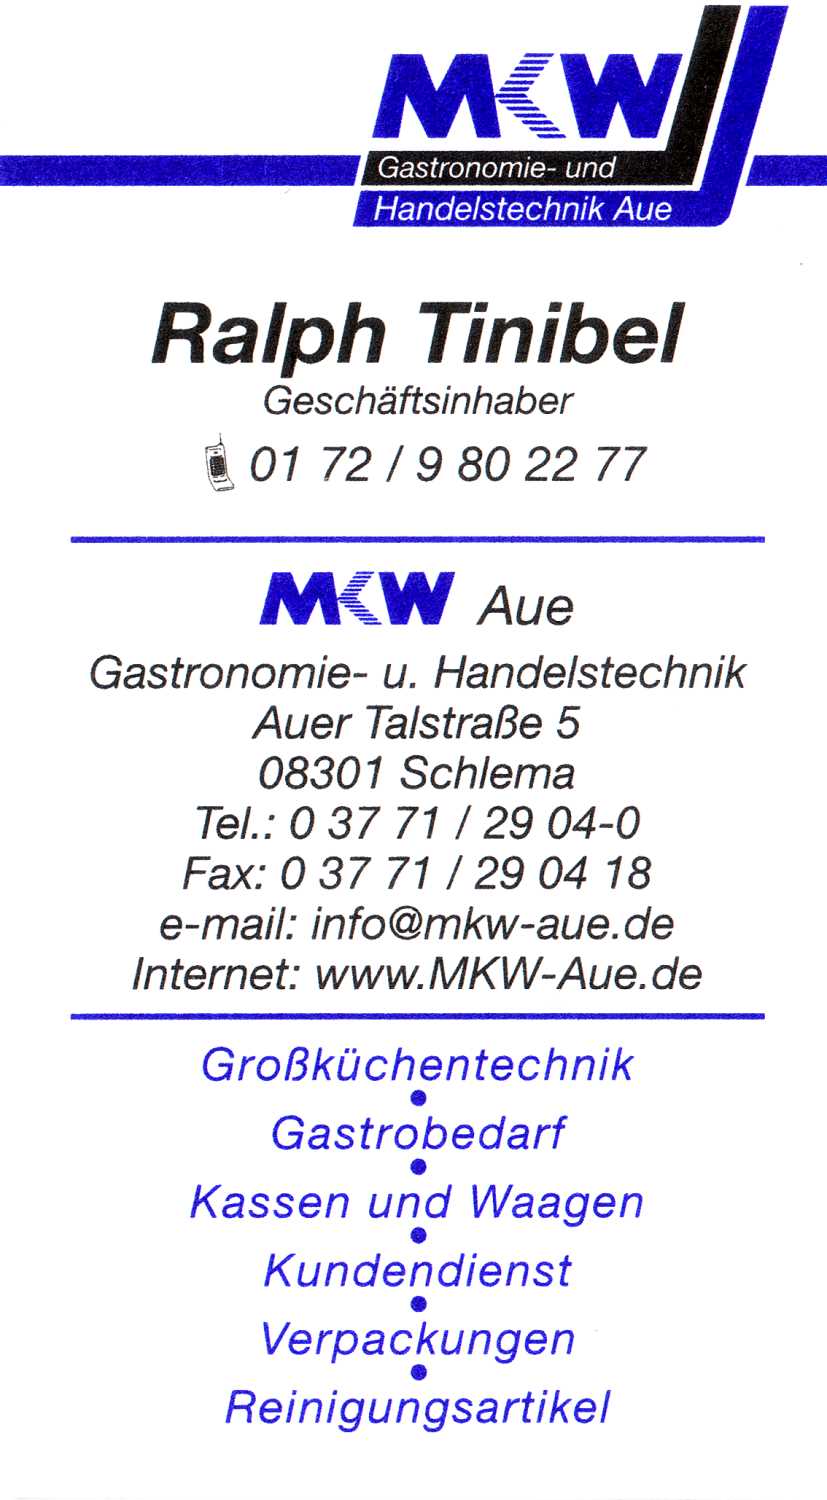 MKW Gastronomietechnik und Handelstechnik Aue,
 Auer TalstraÃŸe 5,
 08301 Bad Schlema